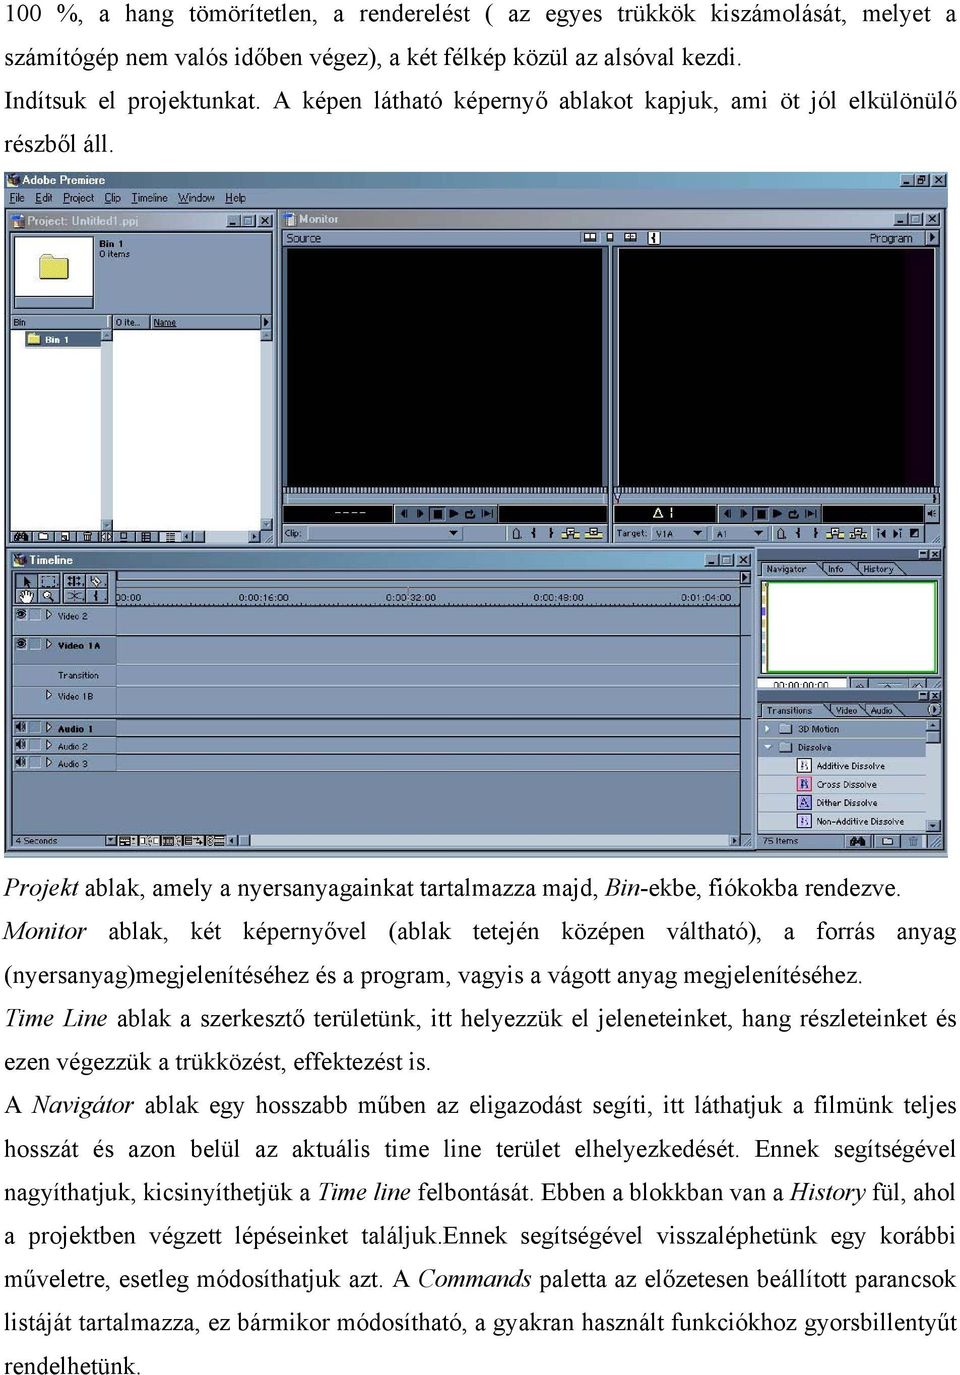 Monitor ablak, két képernyővel (ablak tetején középen váltható), a forrás anyag (nyersanyag)megjelenítéséhez és a program, vagyis a vágott anyag megjelenítéséhez.